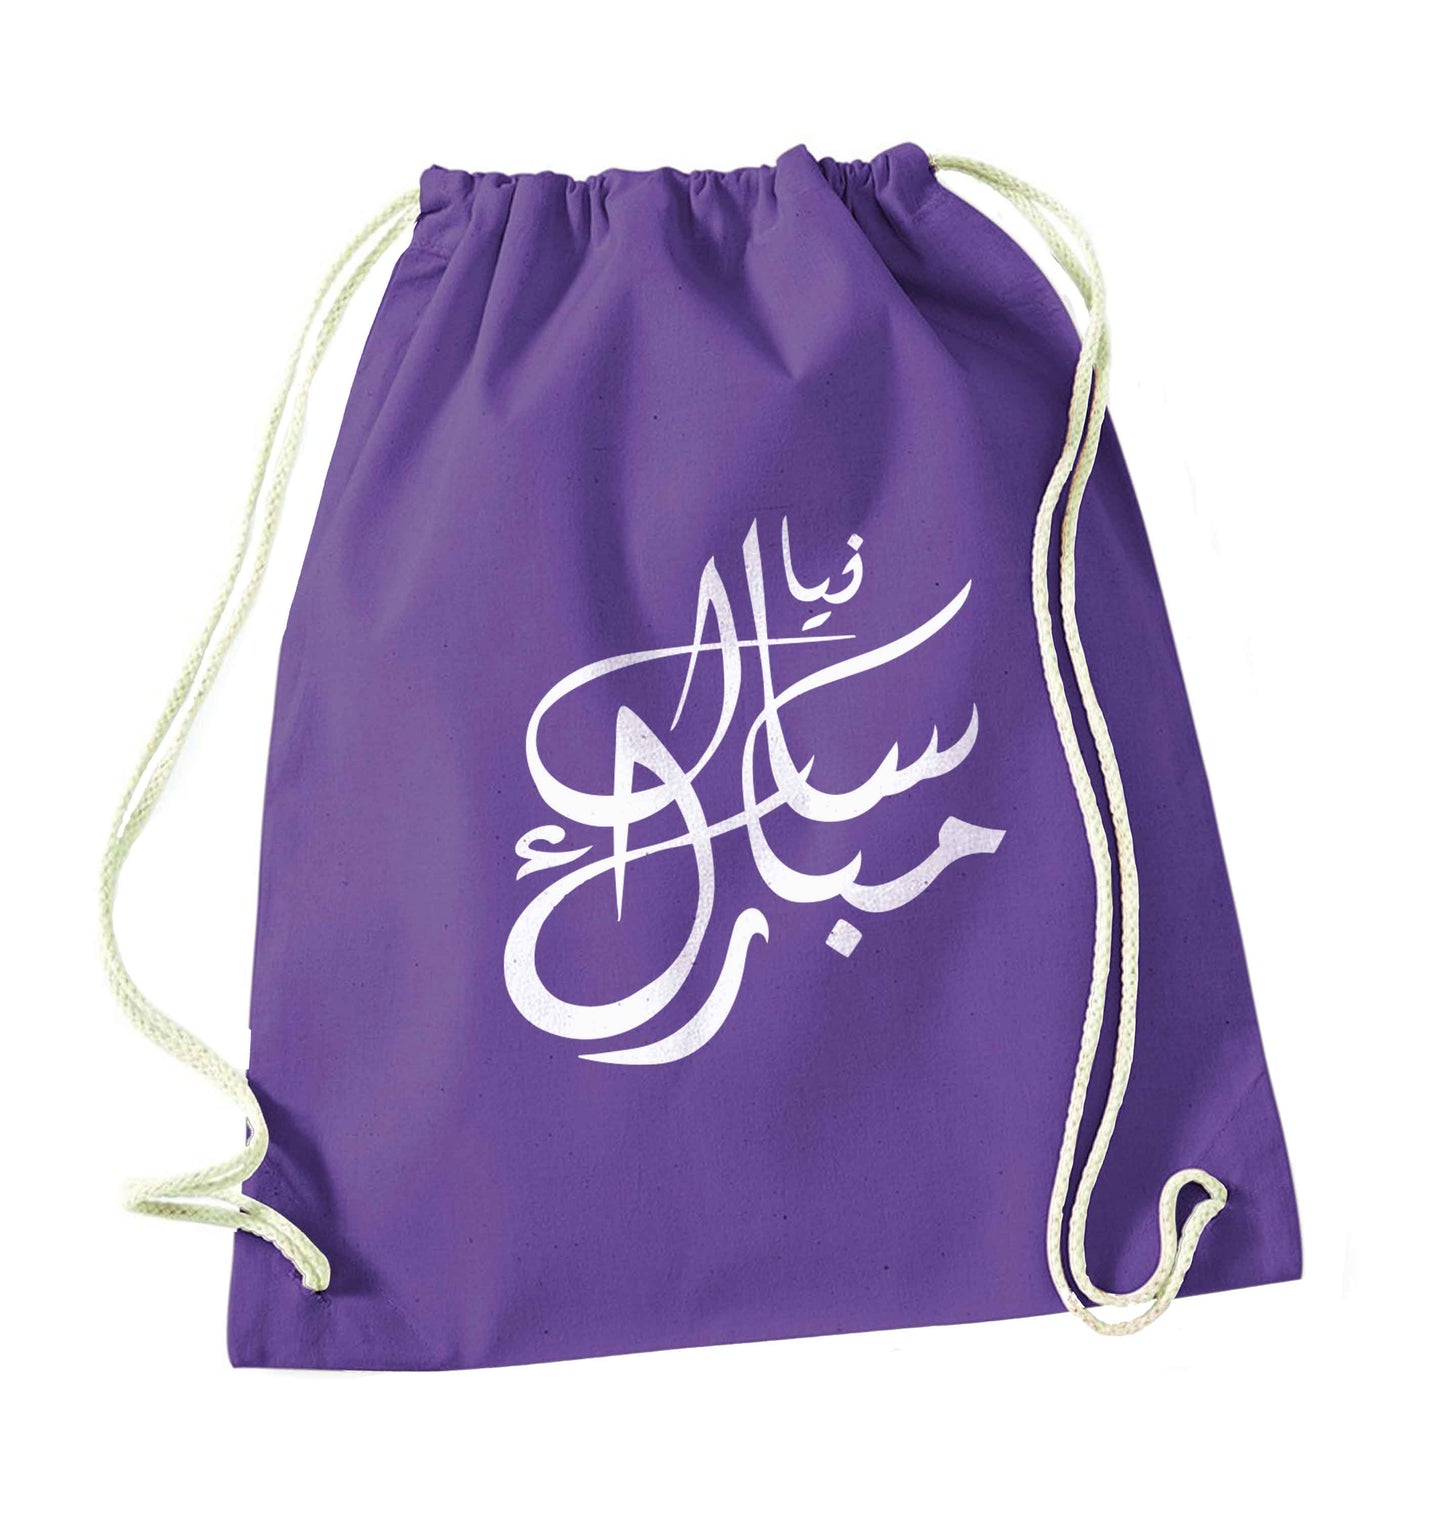 Urdu Naya saal mubarak purple drawstring bag